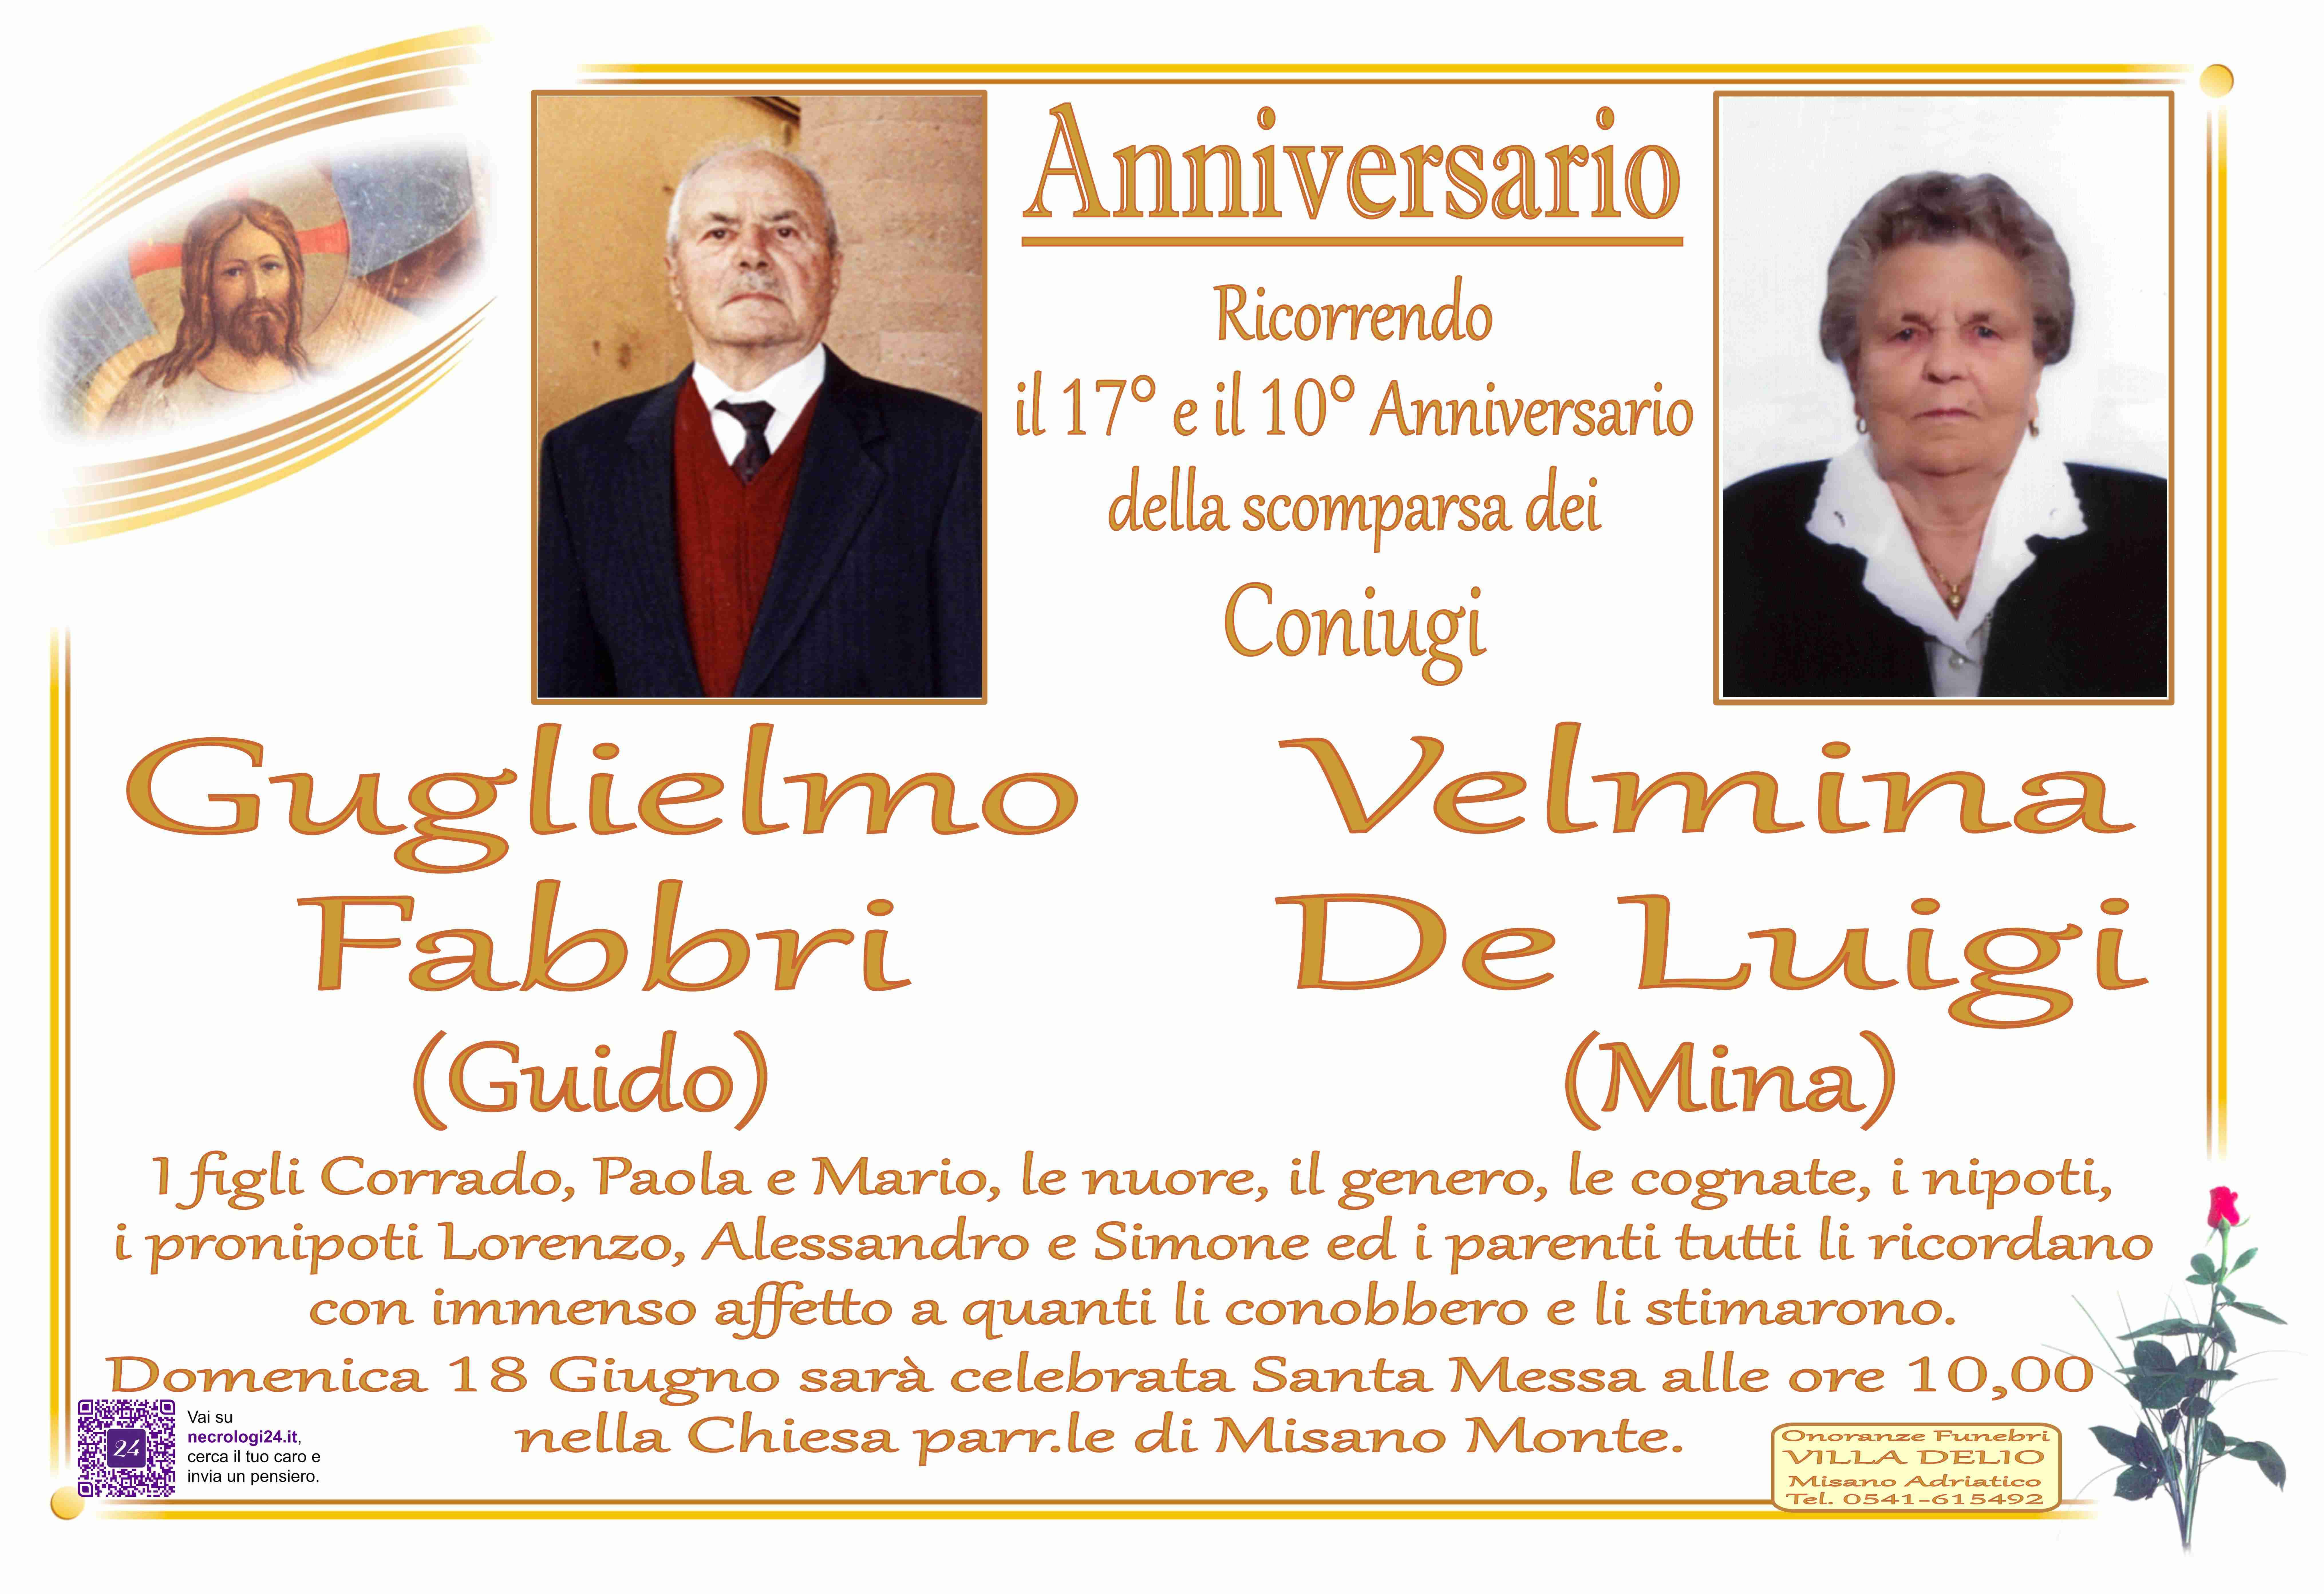 Guglielmo Fabbri e Velmina De Luigi